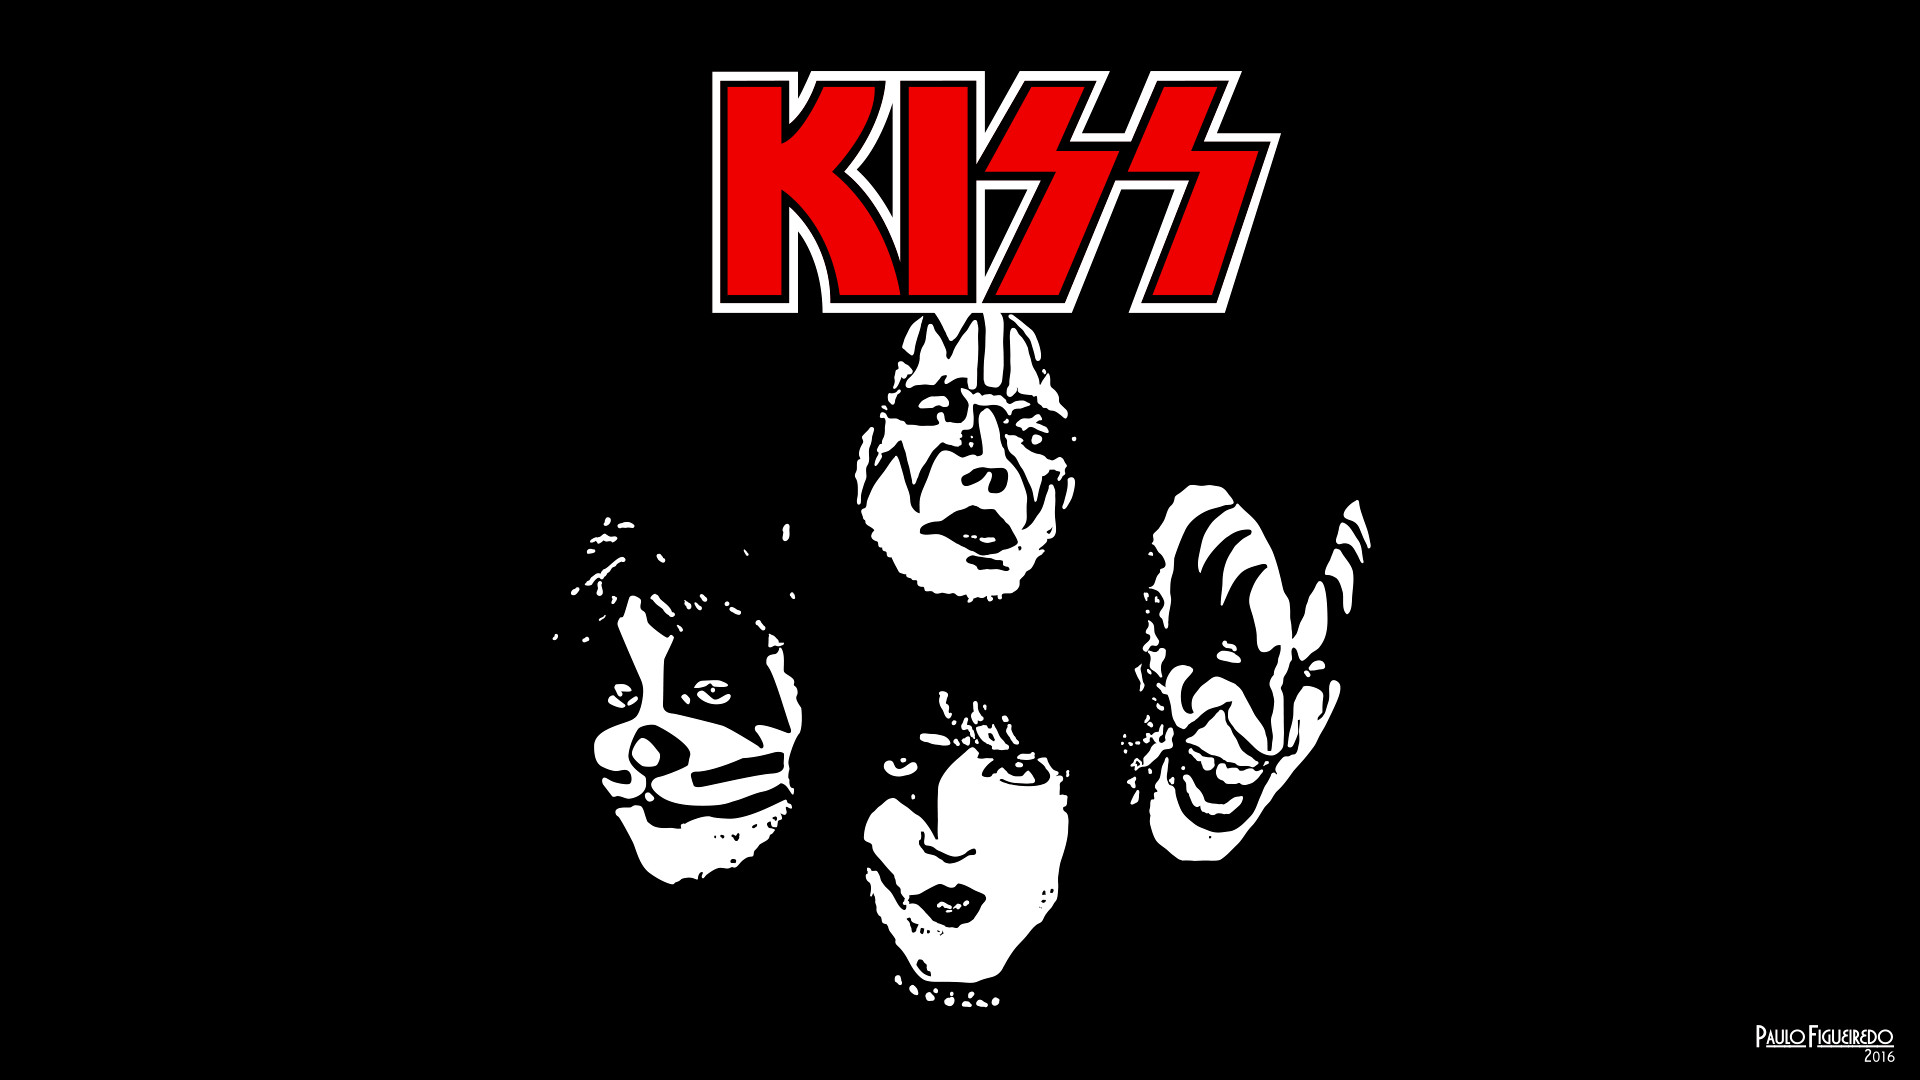 Кис р. Кисс рок группа лого. Kizz группа логотип. Группа Кисс символ. Kiss группа надпись.